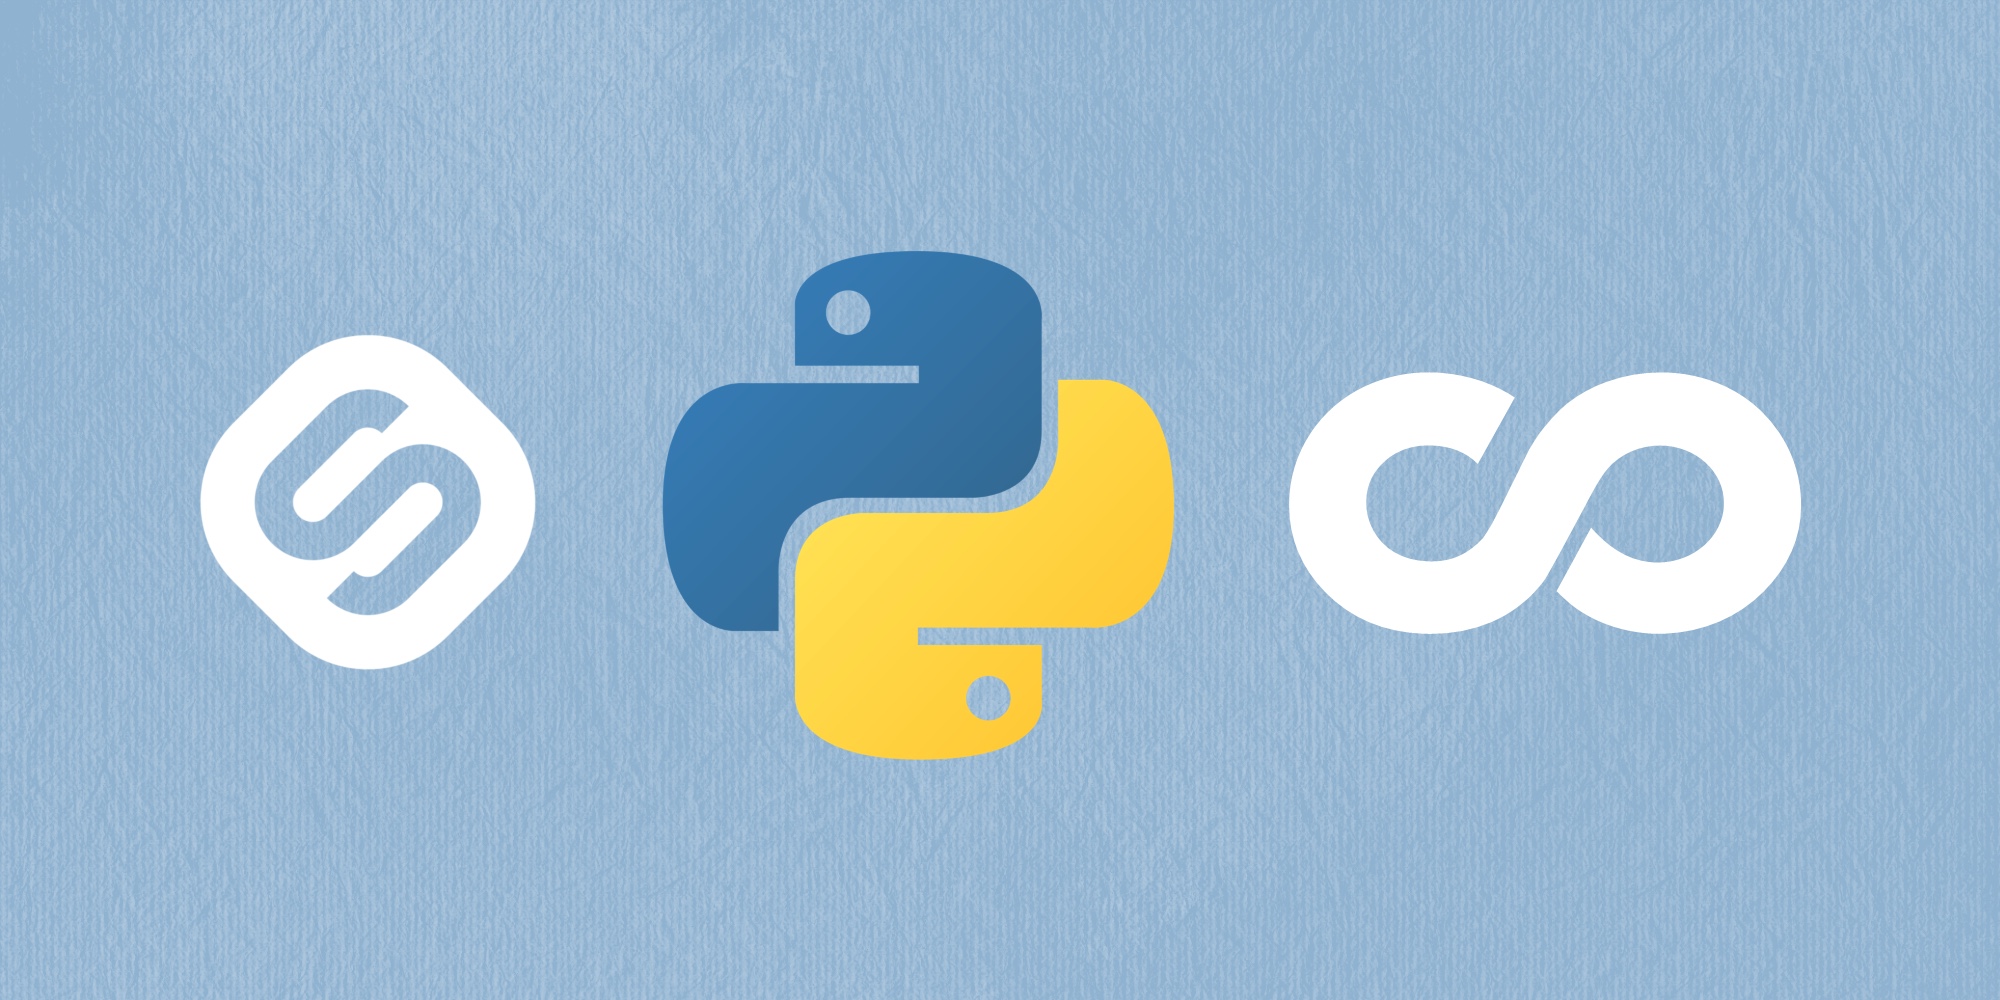 🐍 ТОП-15 бесплатных учебных курсов по Python для начинающих разработчиков